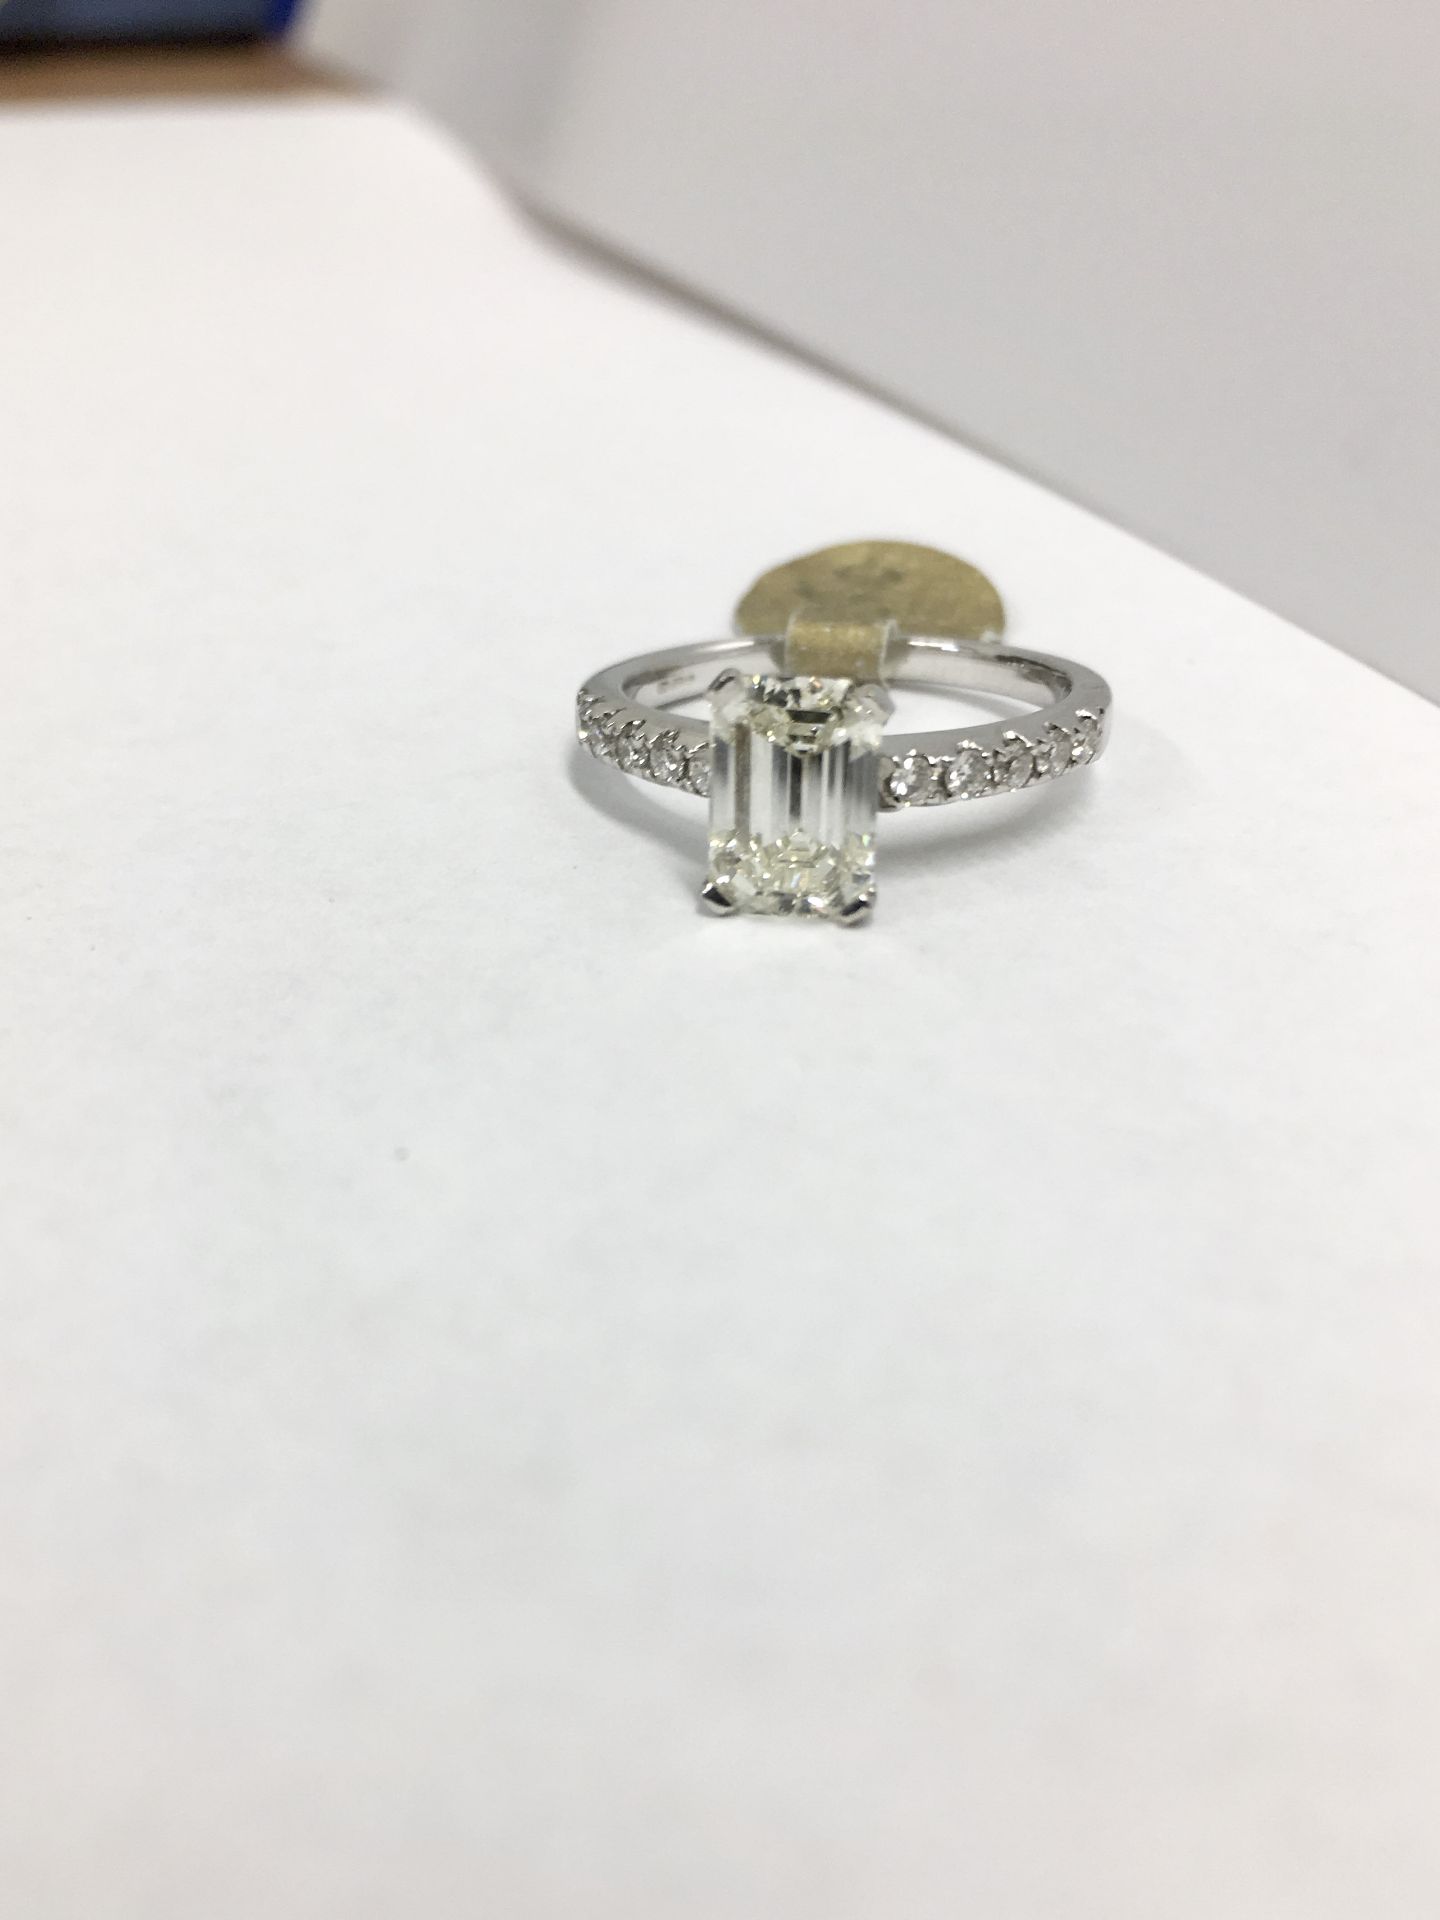 1.50ct Emerald cut j colour vs clarity,10x0.01ct diamonds brilliant cut set in 18ct white gold